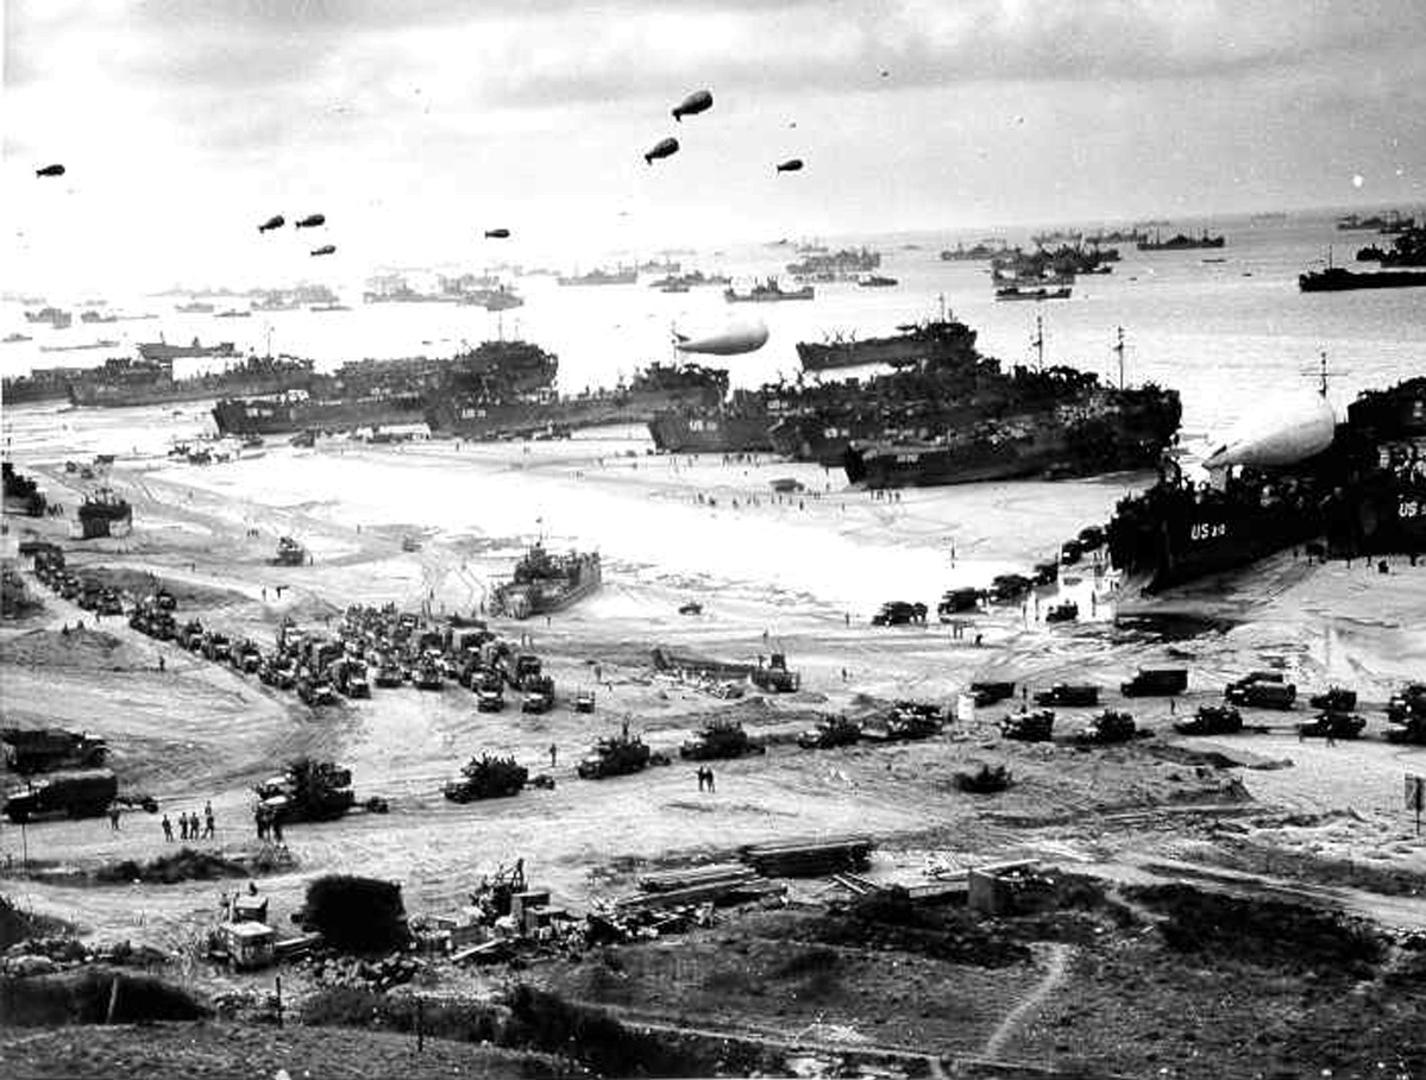 Operacija iskrcavanja savezničke vojske započela je 6. lipnja 1944. i trajala je sve do 30. kolovoza. Mjesto najveće ratne operacije u povijesti ratovanja bilo je na obalama Normandije u sjevernoj Francuskoj. Tri milijuna vojnika iskrcalo se na tom prostoru kako bi otvorilo novi front protiv vojske Trećeg Reicha